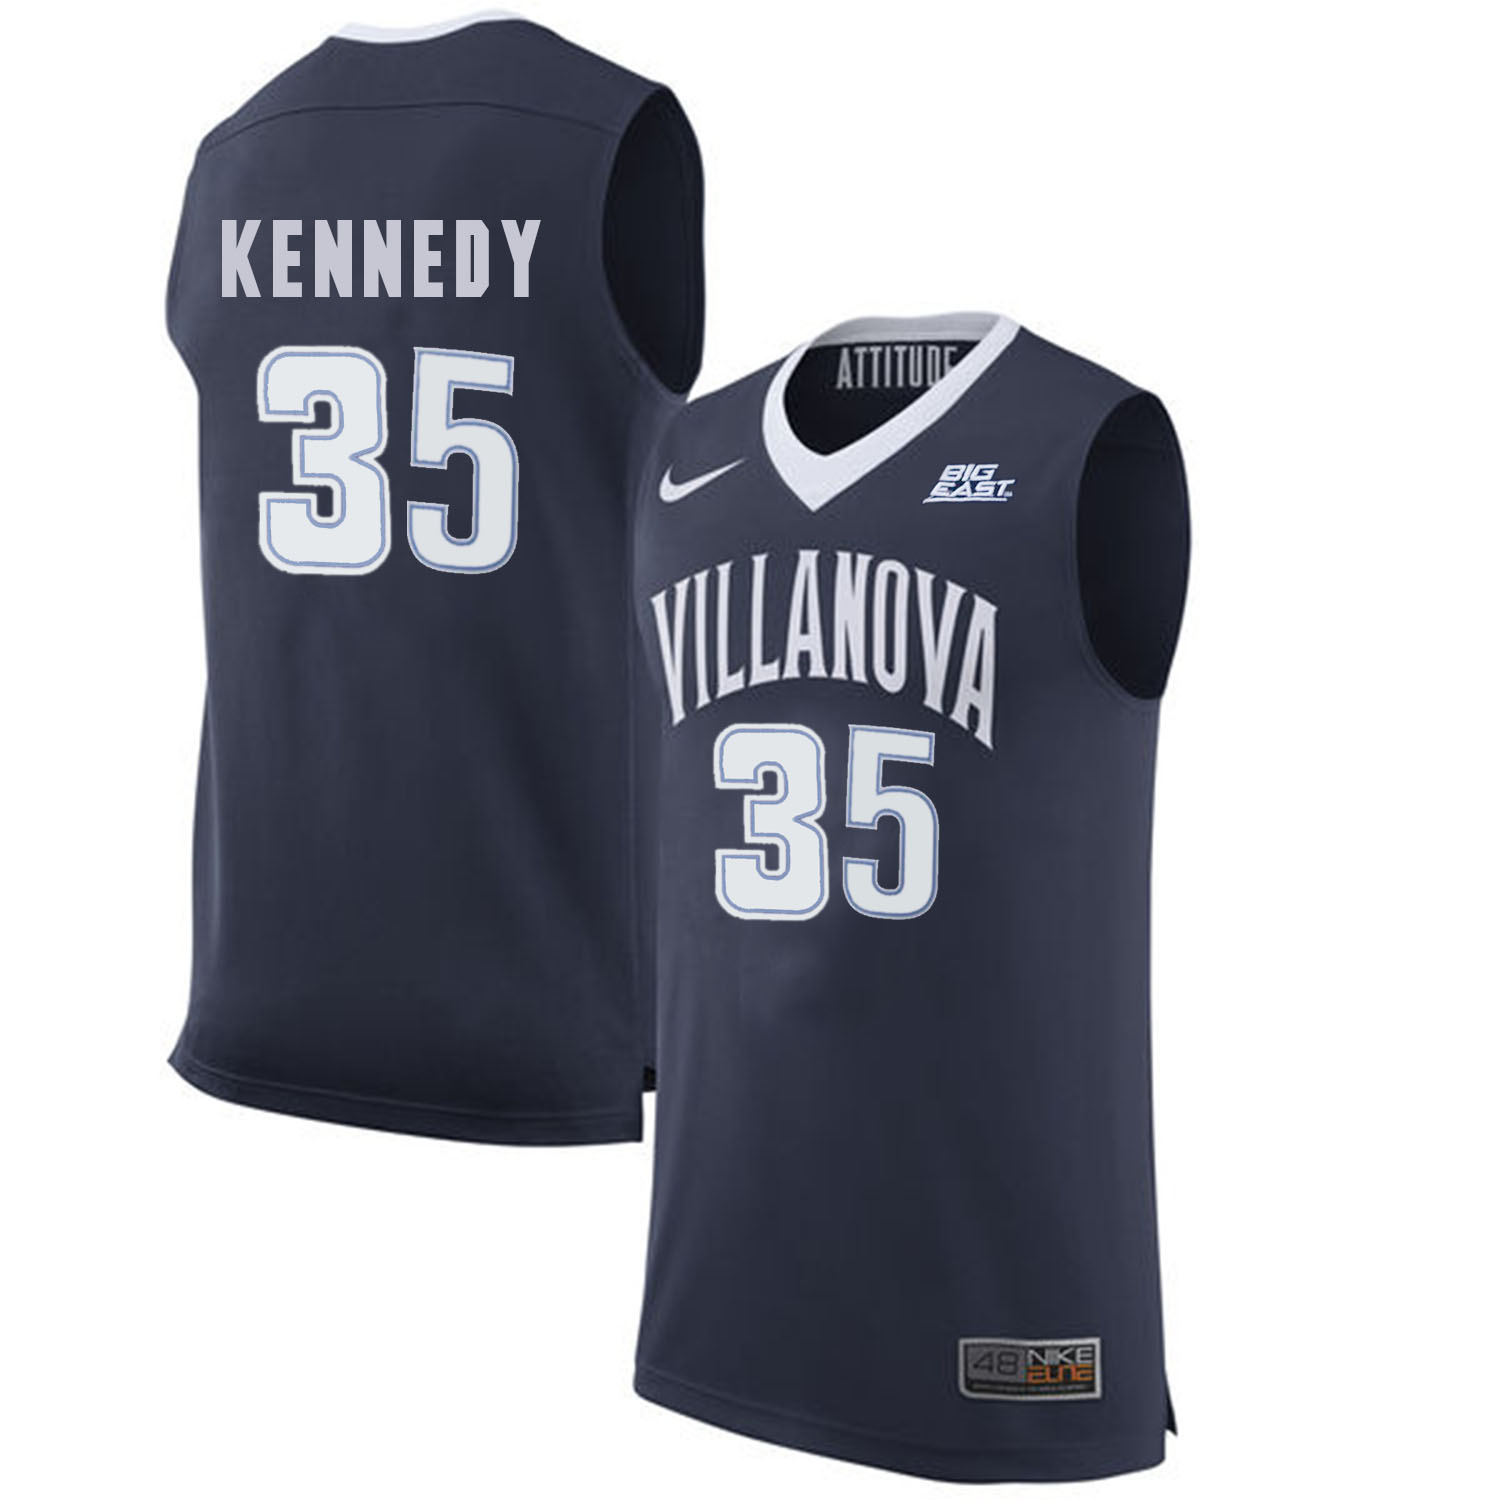 Villanova Wildcats 35 Matt Kennedy Navy College Basketball Elite Jersey